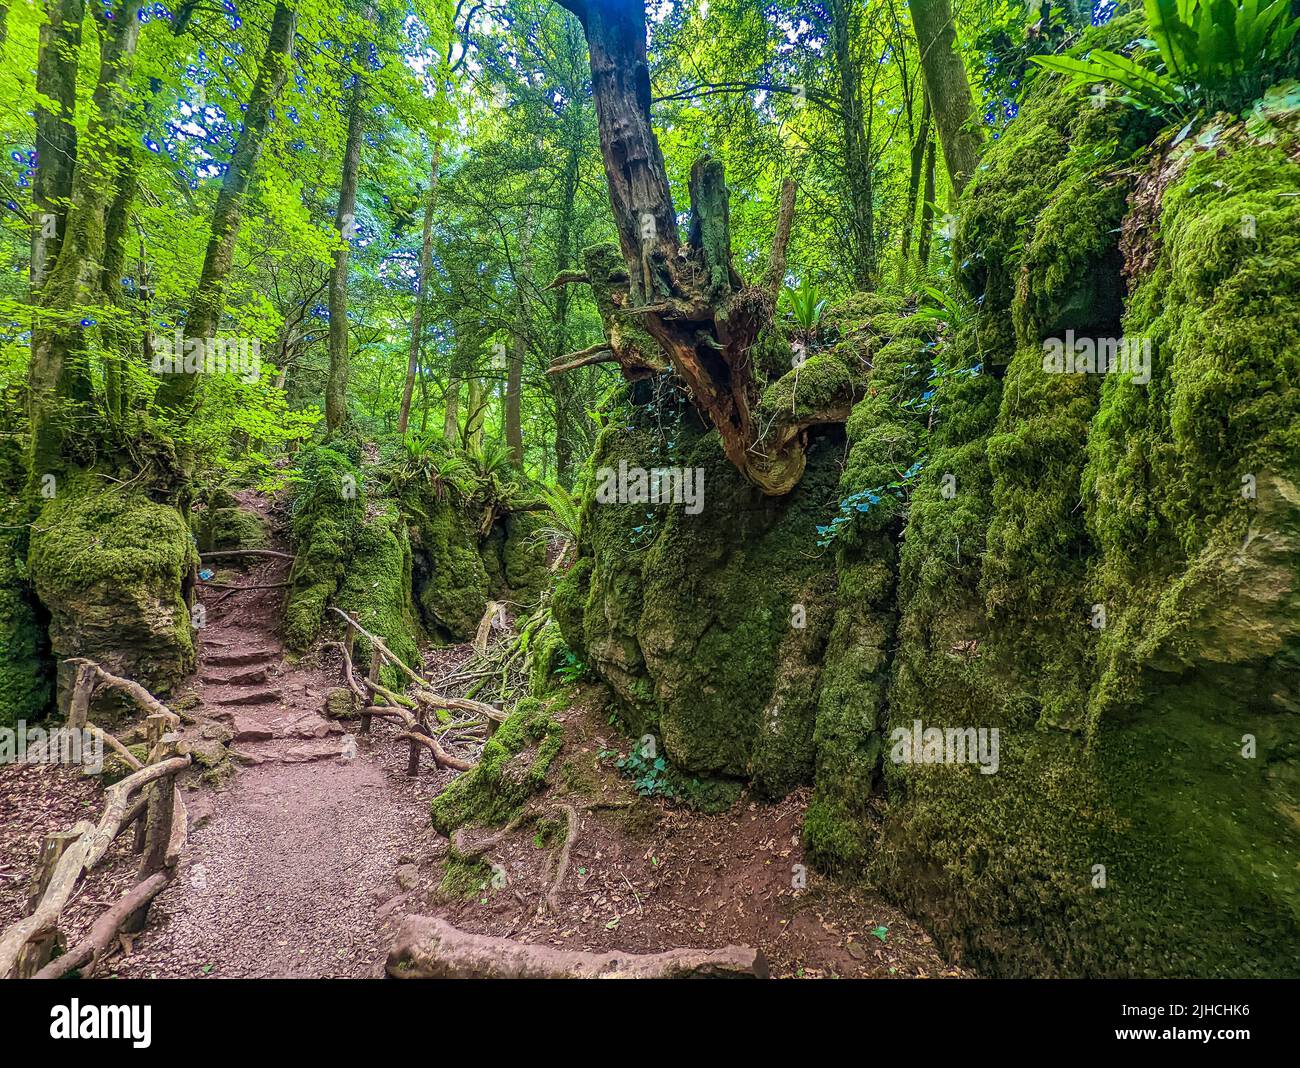 Las rocas cubiertas de musgo de Puzzlewood, un bosque cerca de Coleford, el Bosque Real de Dean, Reino Unido. Foto de stock